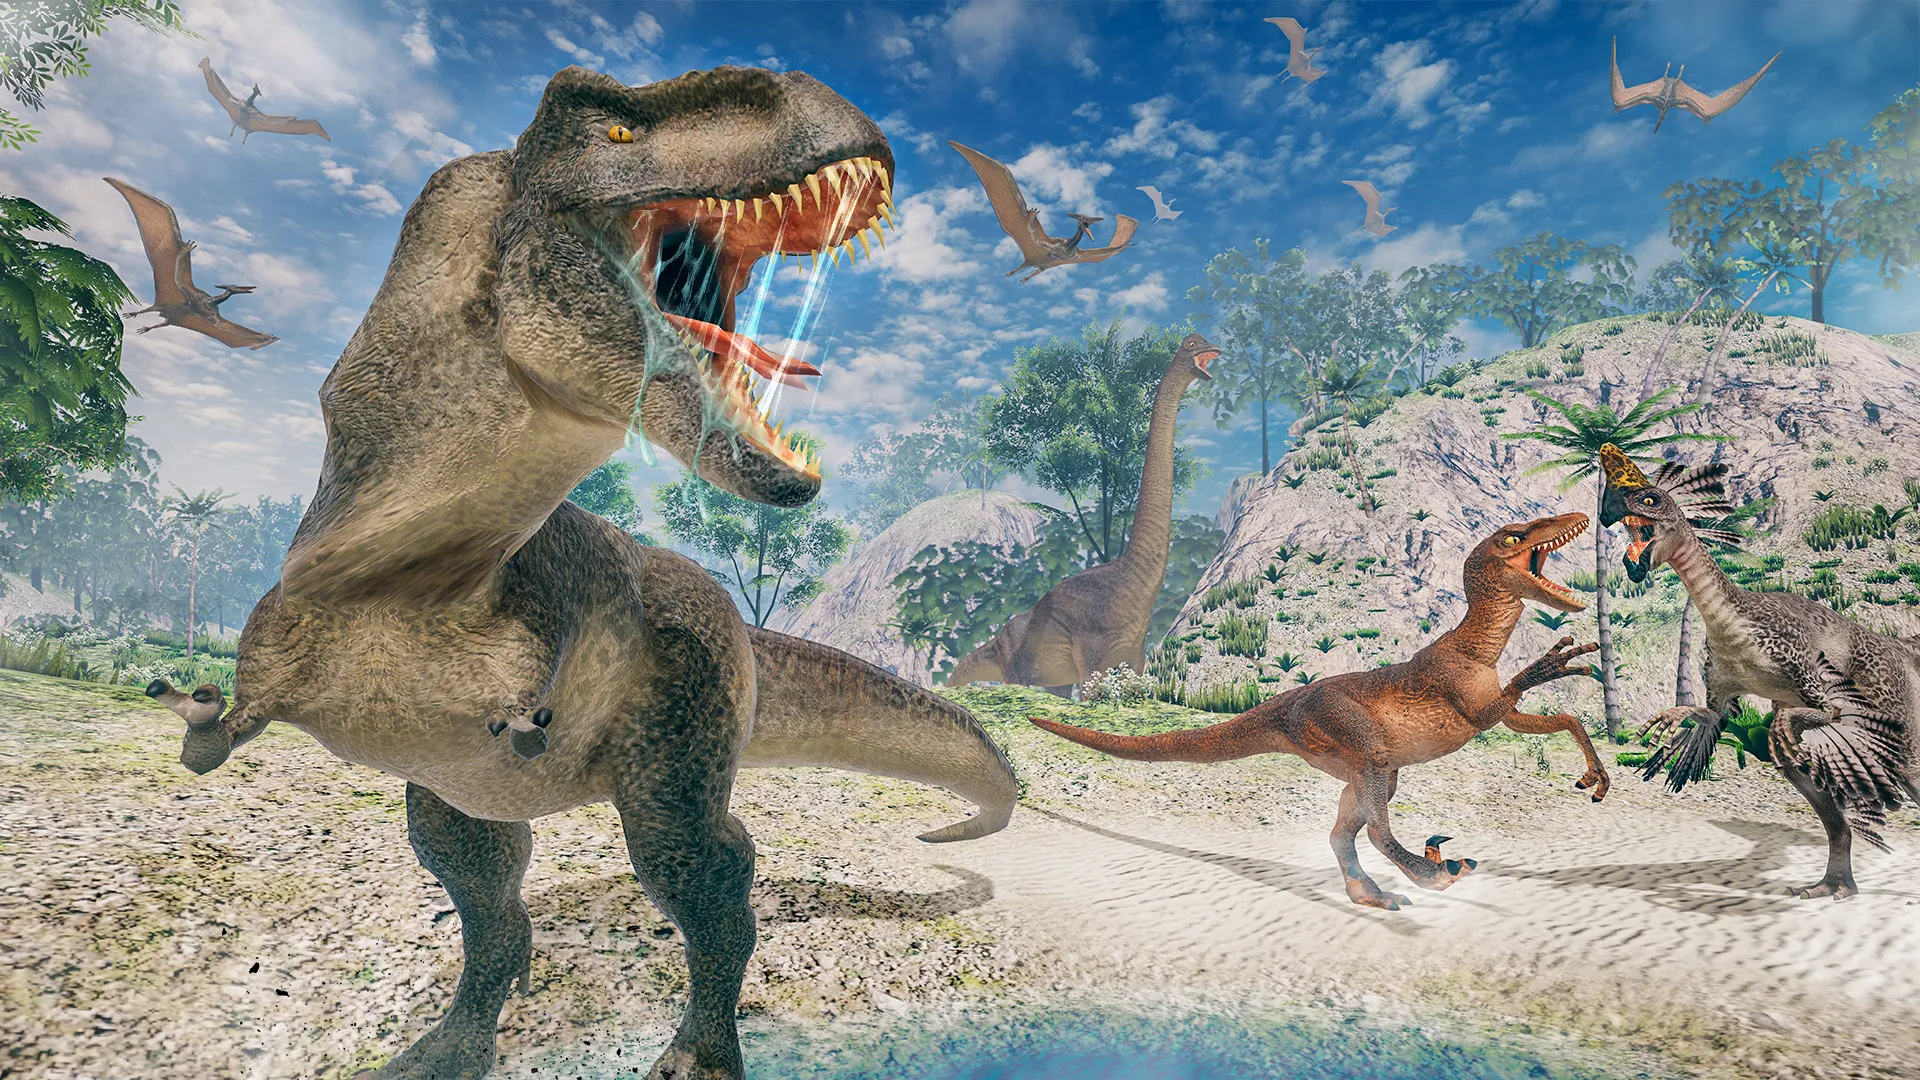 Dinosaur Games: Dino Hunter 3D